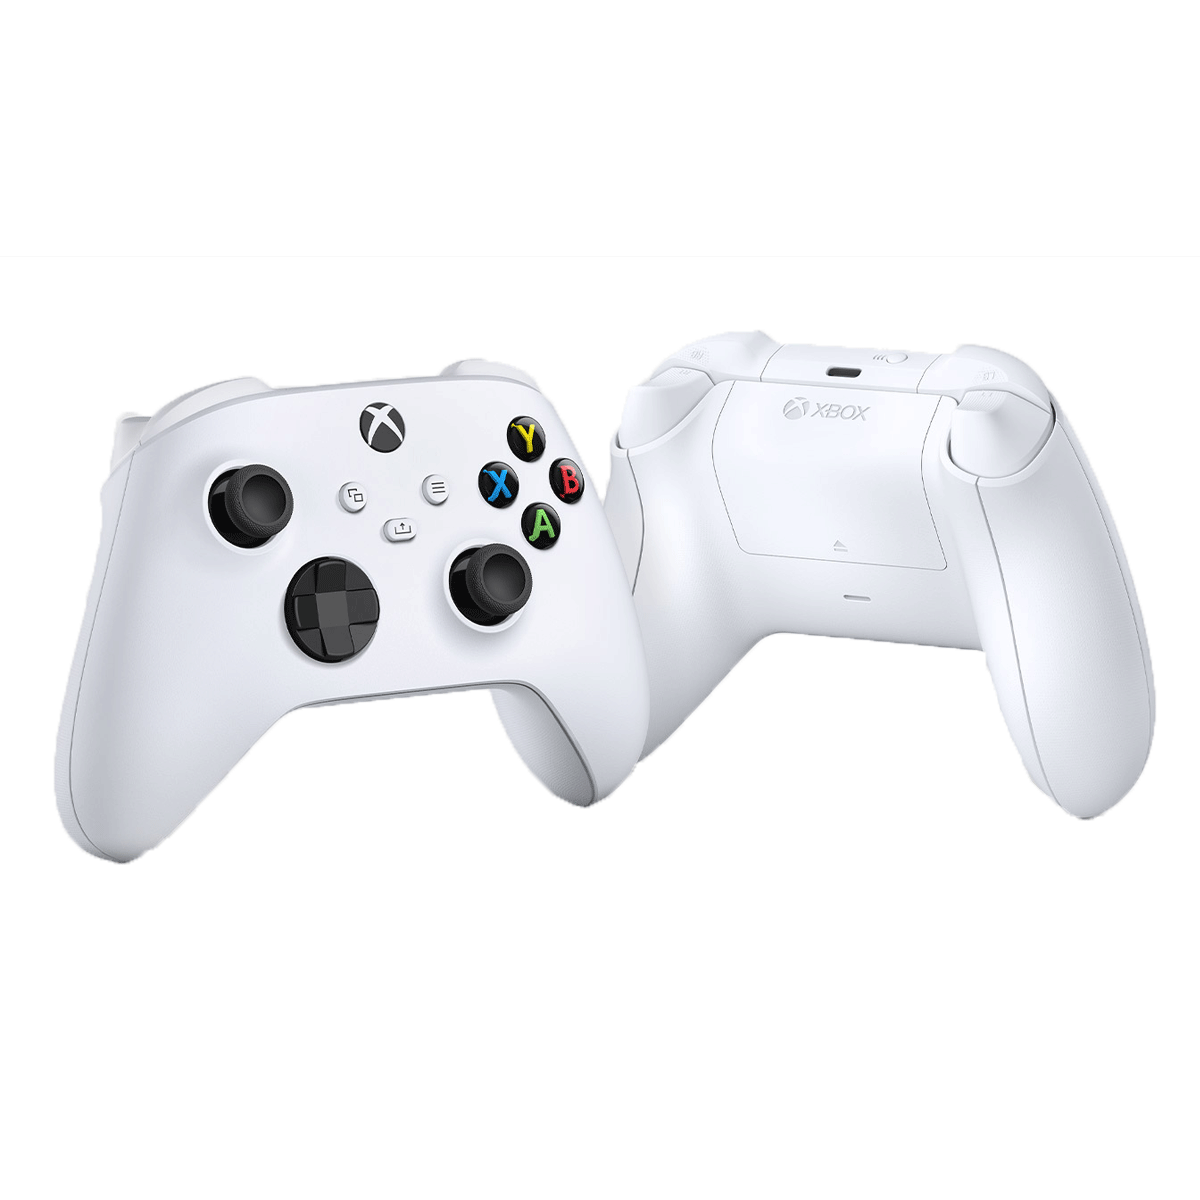 Tay cầm Microsoft Xbox Wireless Controller Robot White chính hãng ...